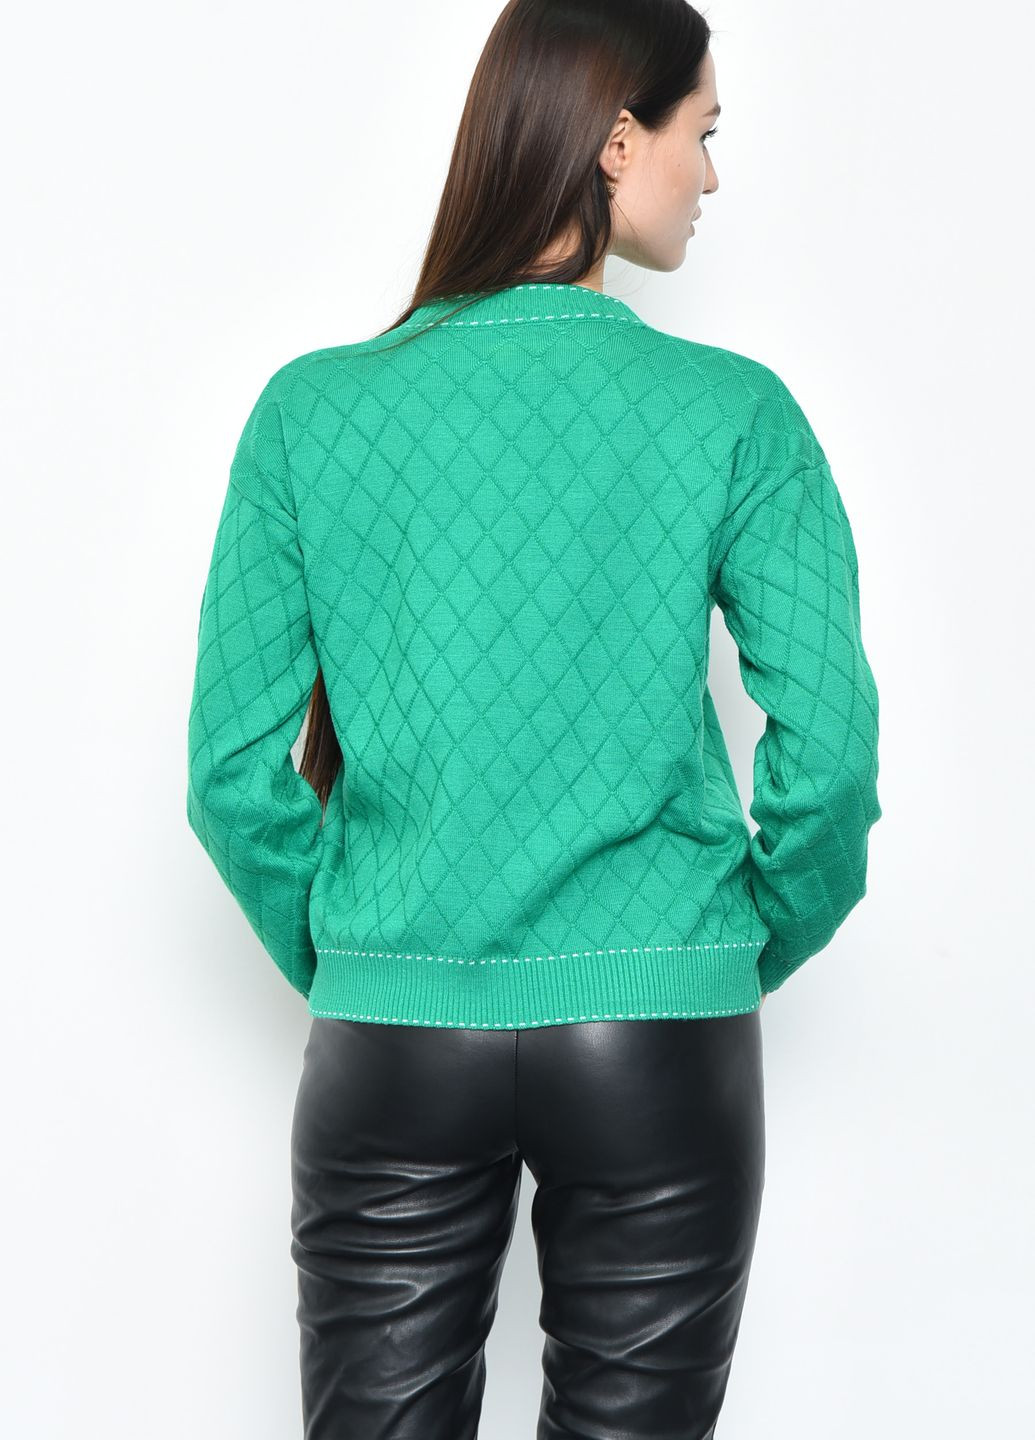 Зеленый демисезонный свитер женский зеленого цвета пуловер Let's Shop